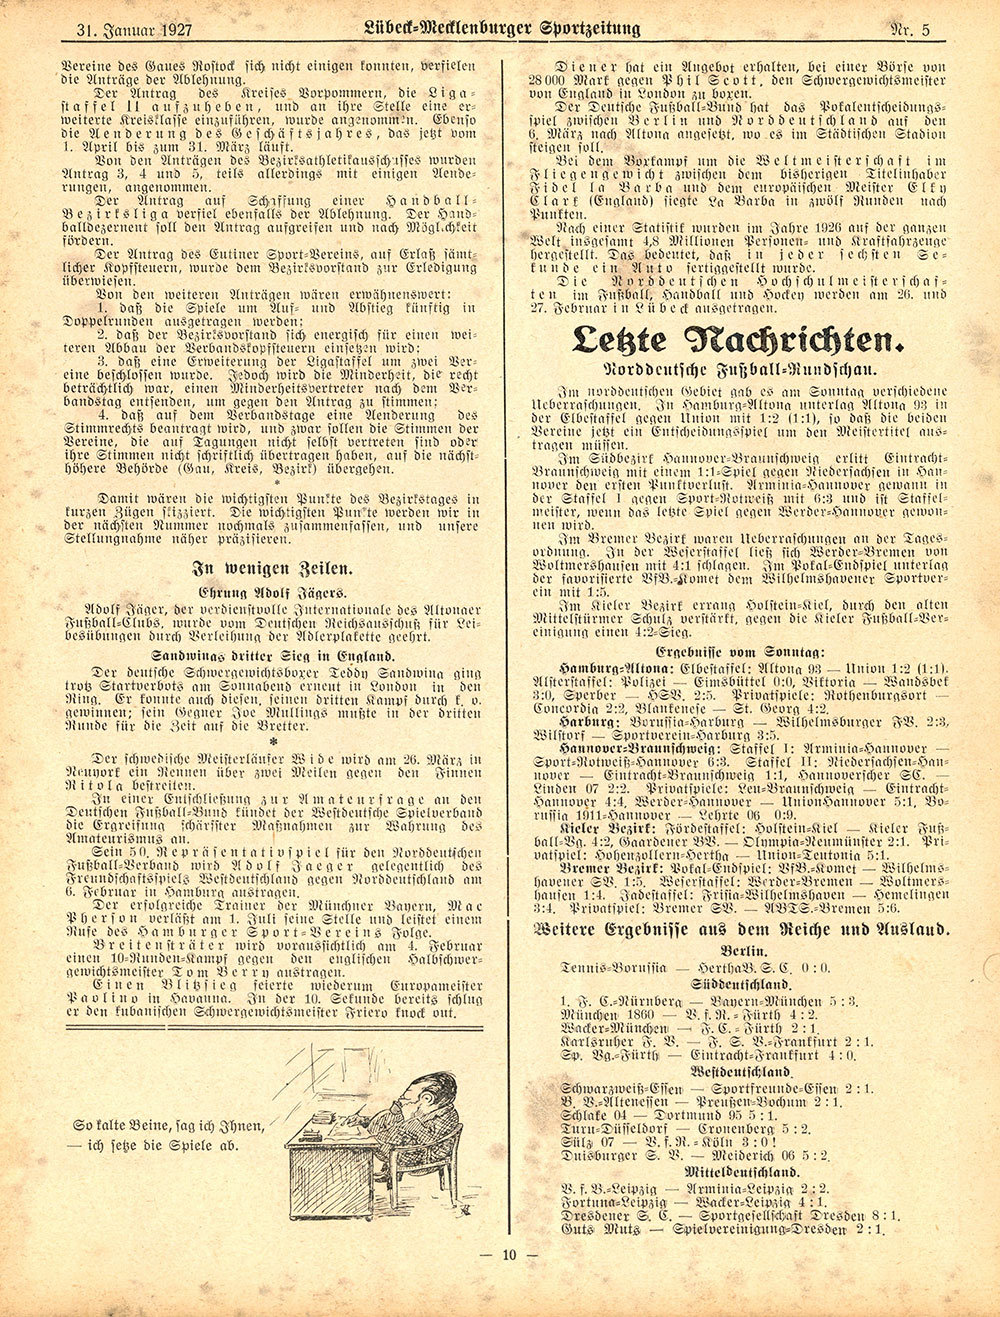 Die Lübeck-Mecklenburger Sport-Zeitung – Ausgabe vom 31.1.1927